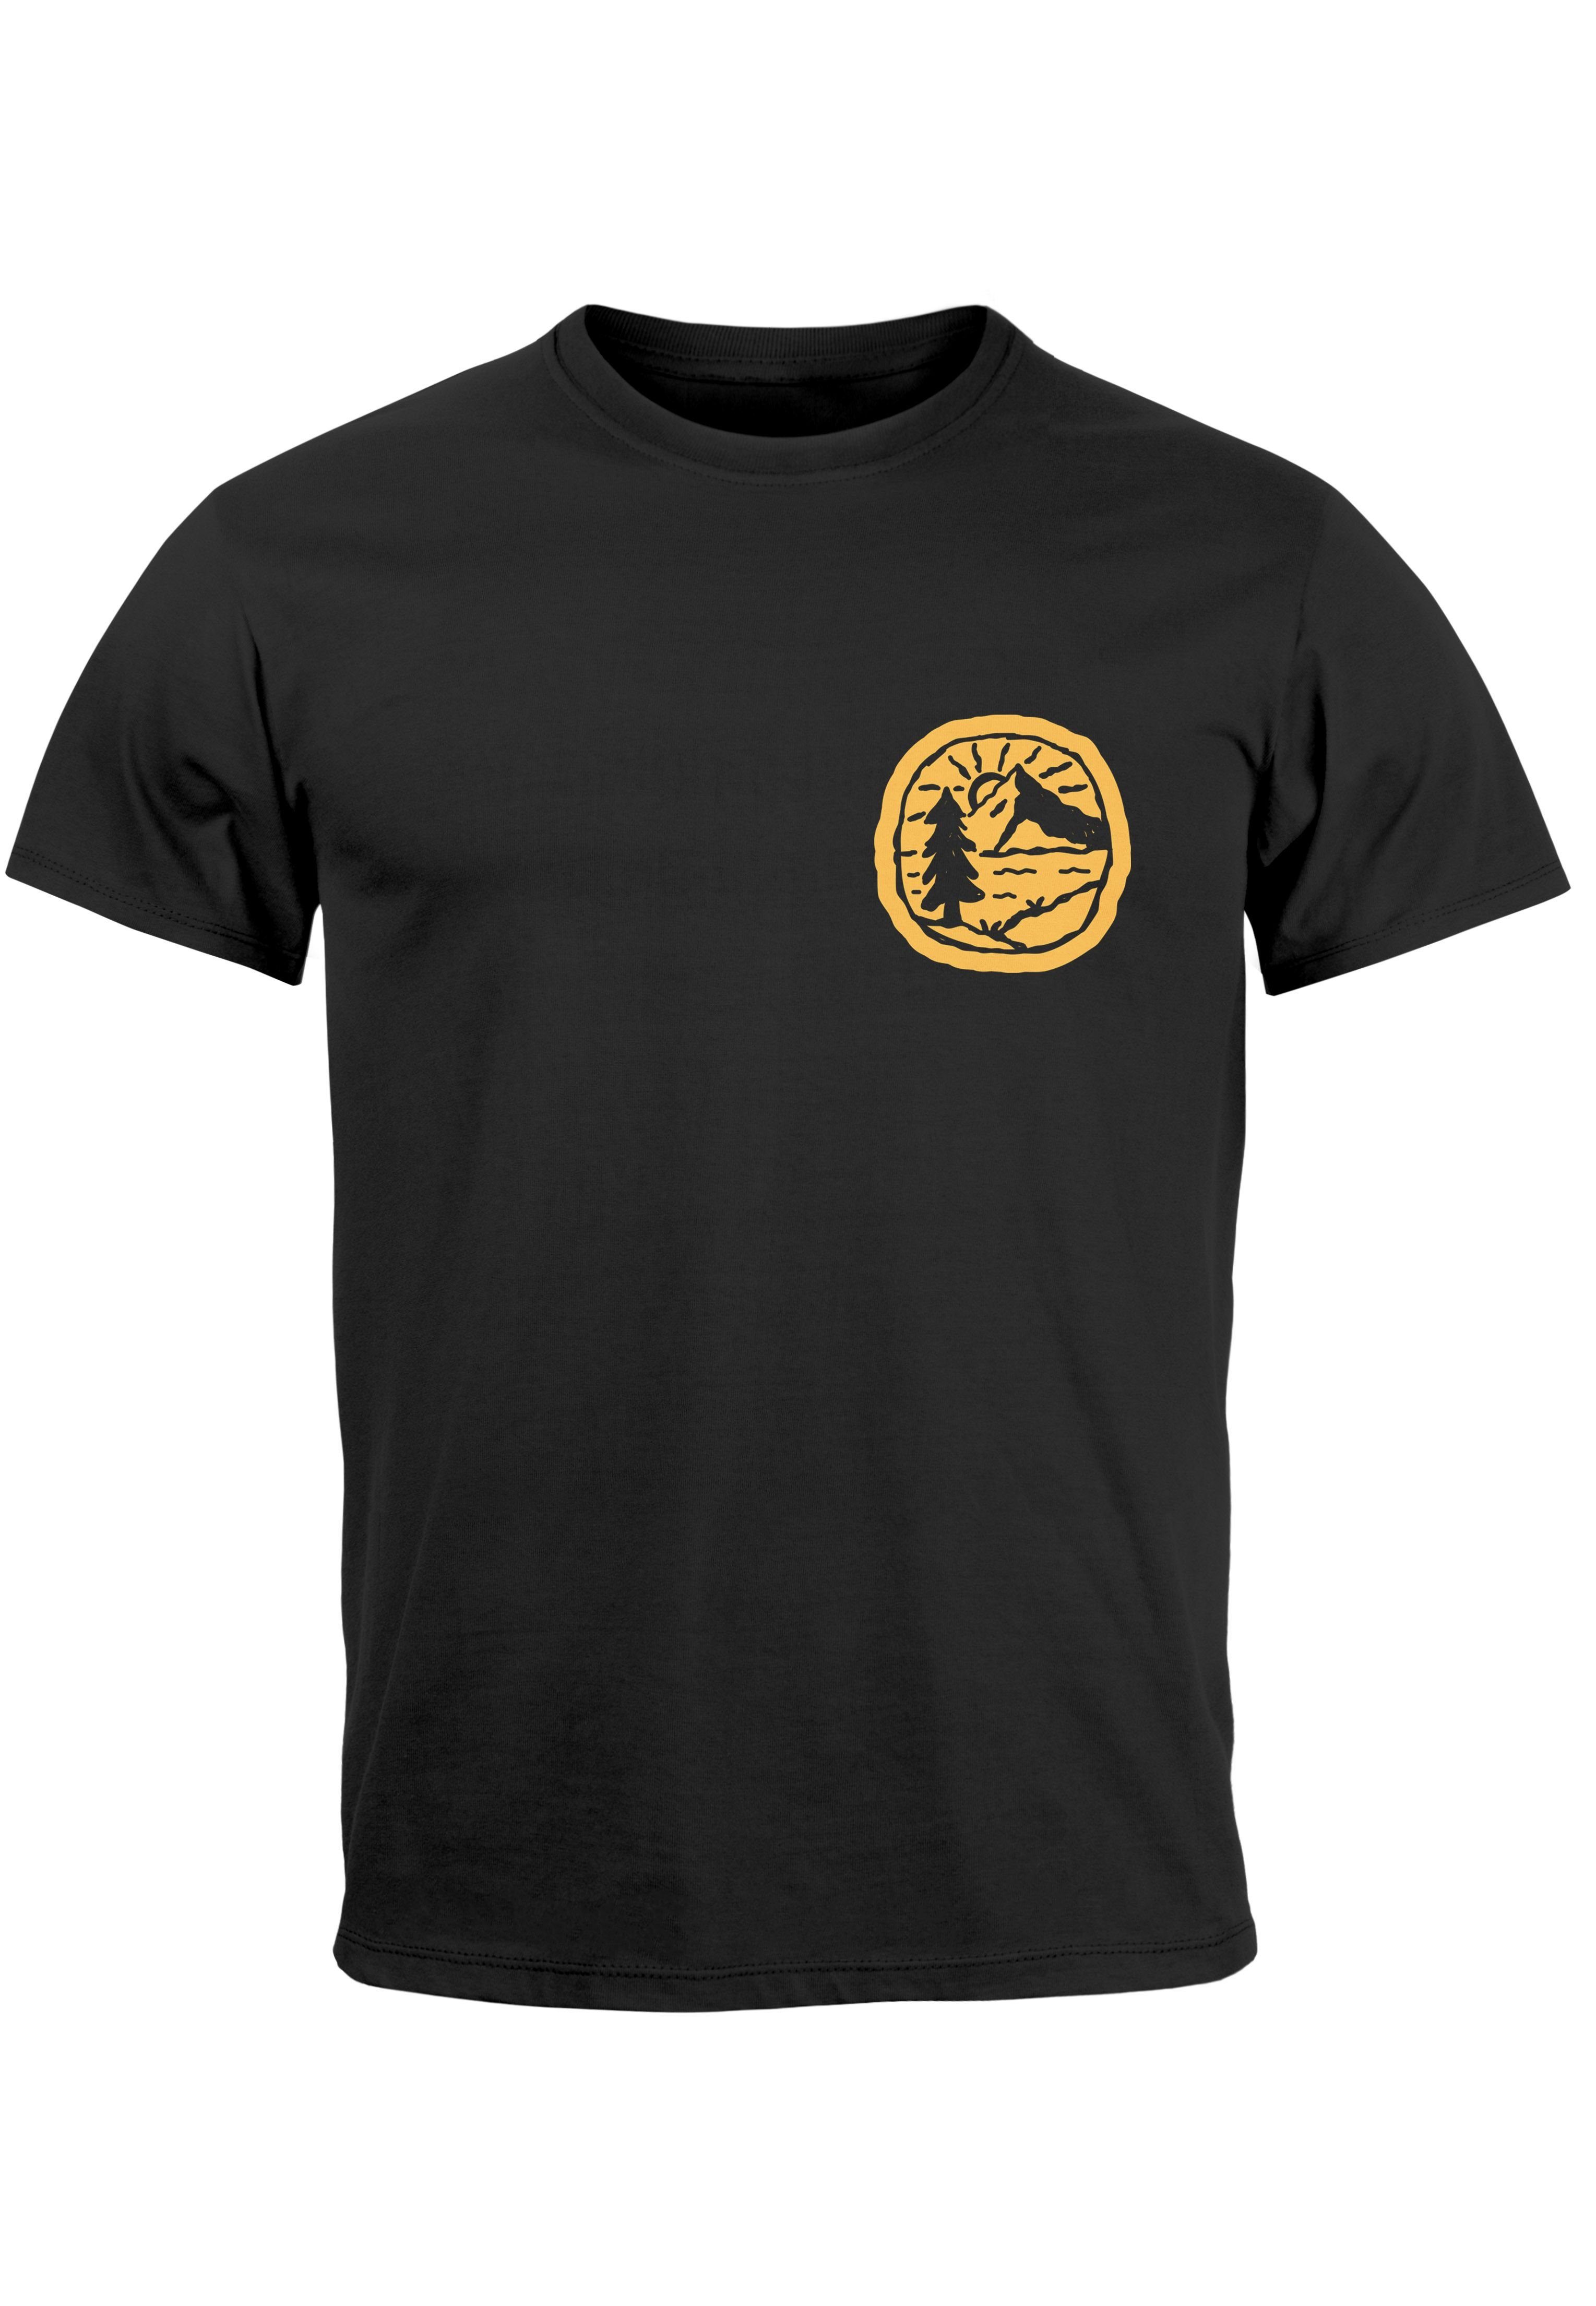 Wandern Print T-Shirt Neverless Print Natur mit Logo schwarz Print-Shirt Badge Herren Berge Landschaft Outdoor